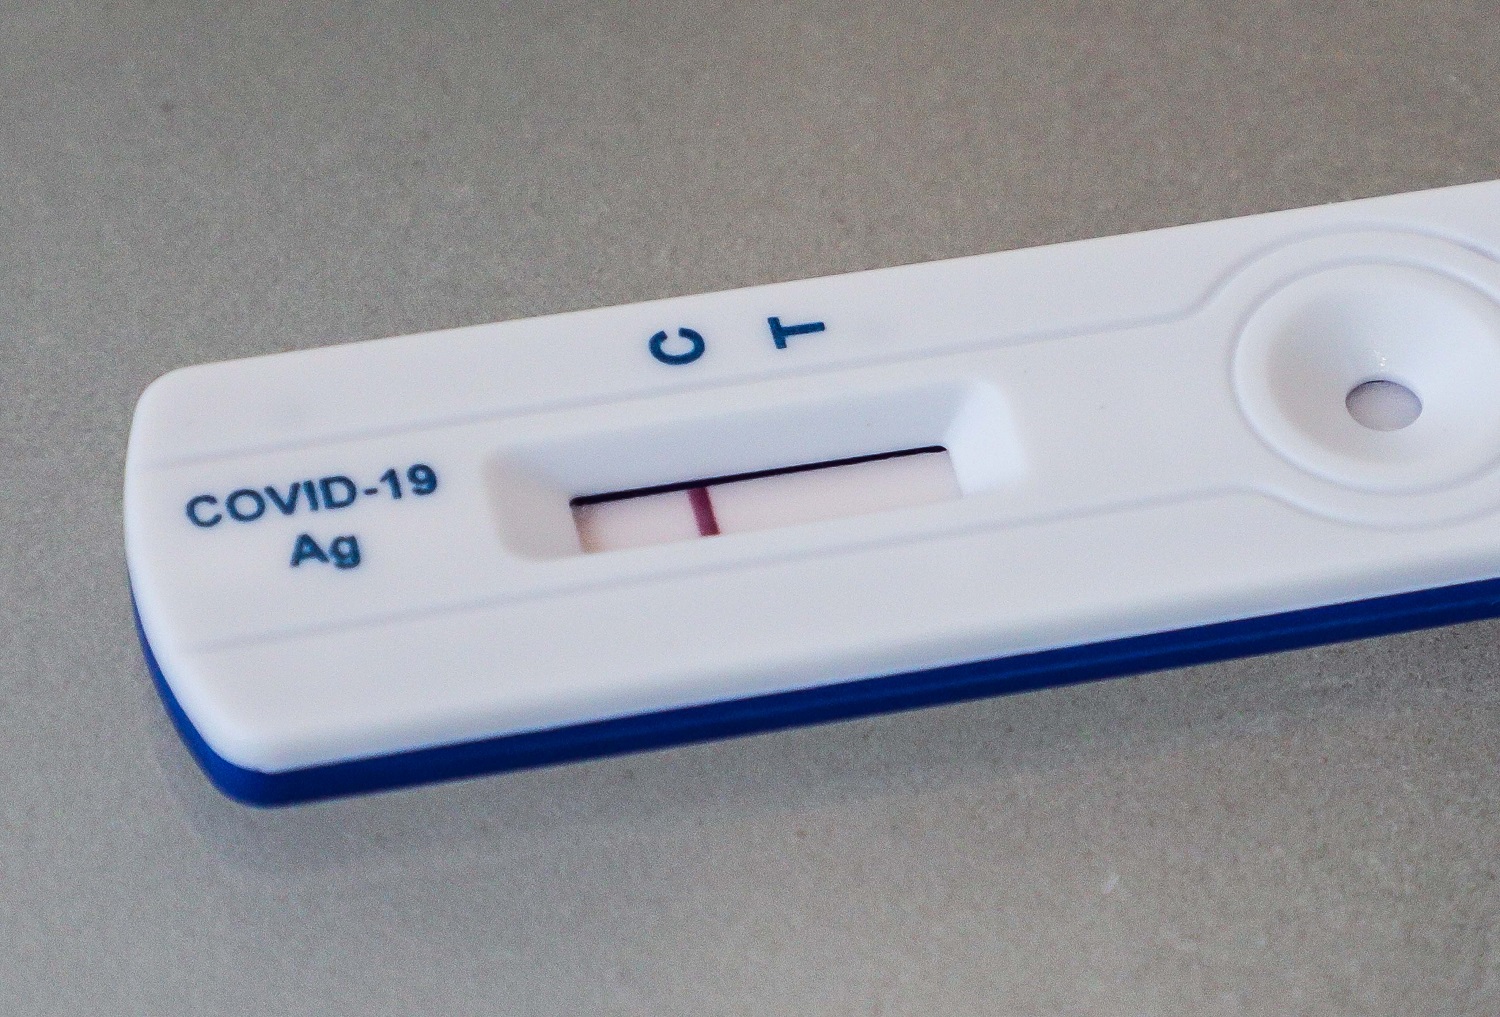 Keičiasi testavimosi tvarka – atsiranda galimybė diagnozuoti COVID-19 savikontrolės testu namuose